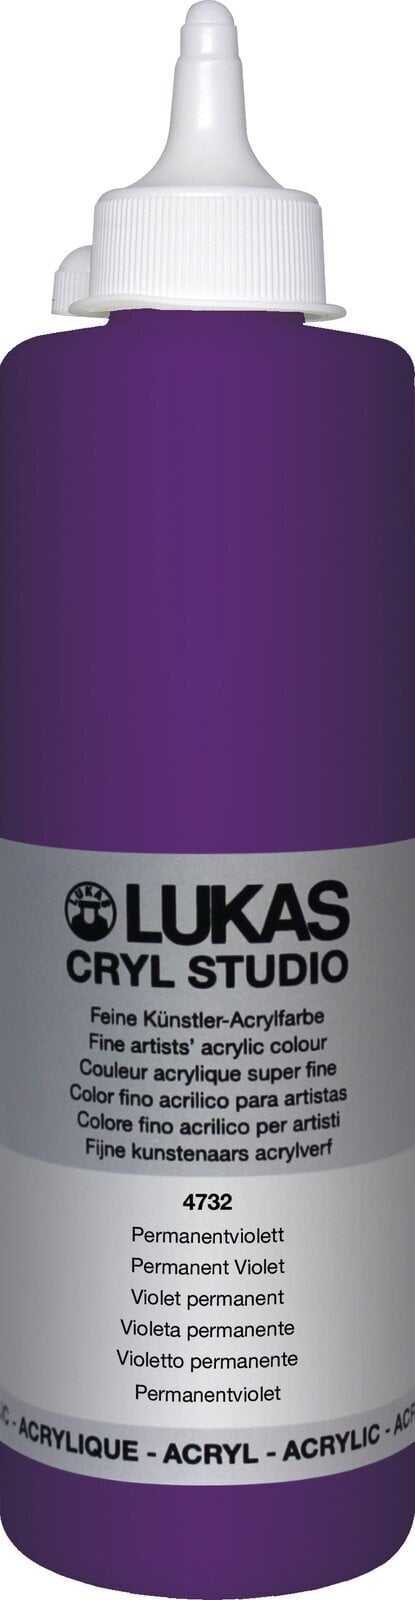 Akrylfärg Lukas Cryl Studio Acrylic Paint Plastic Bottle Akrylfärg Permanent Violet 500 ml 1 st